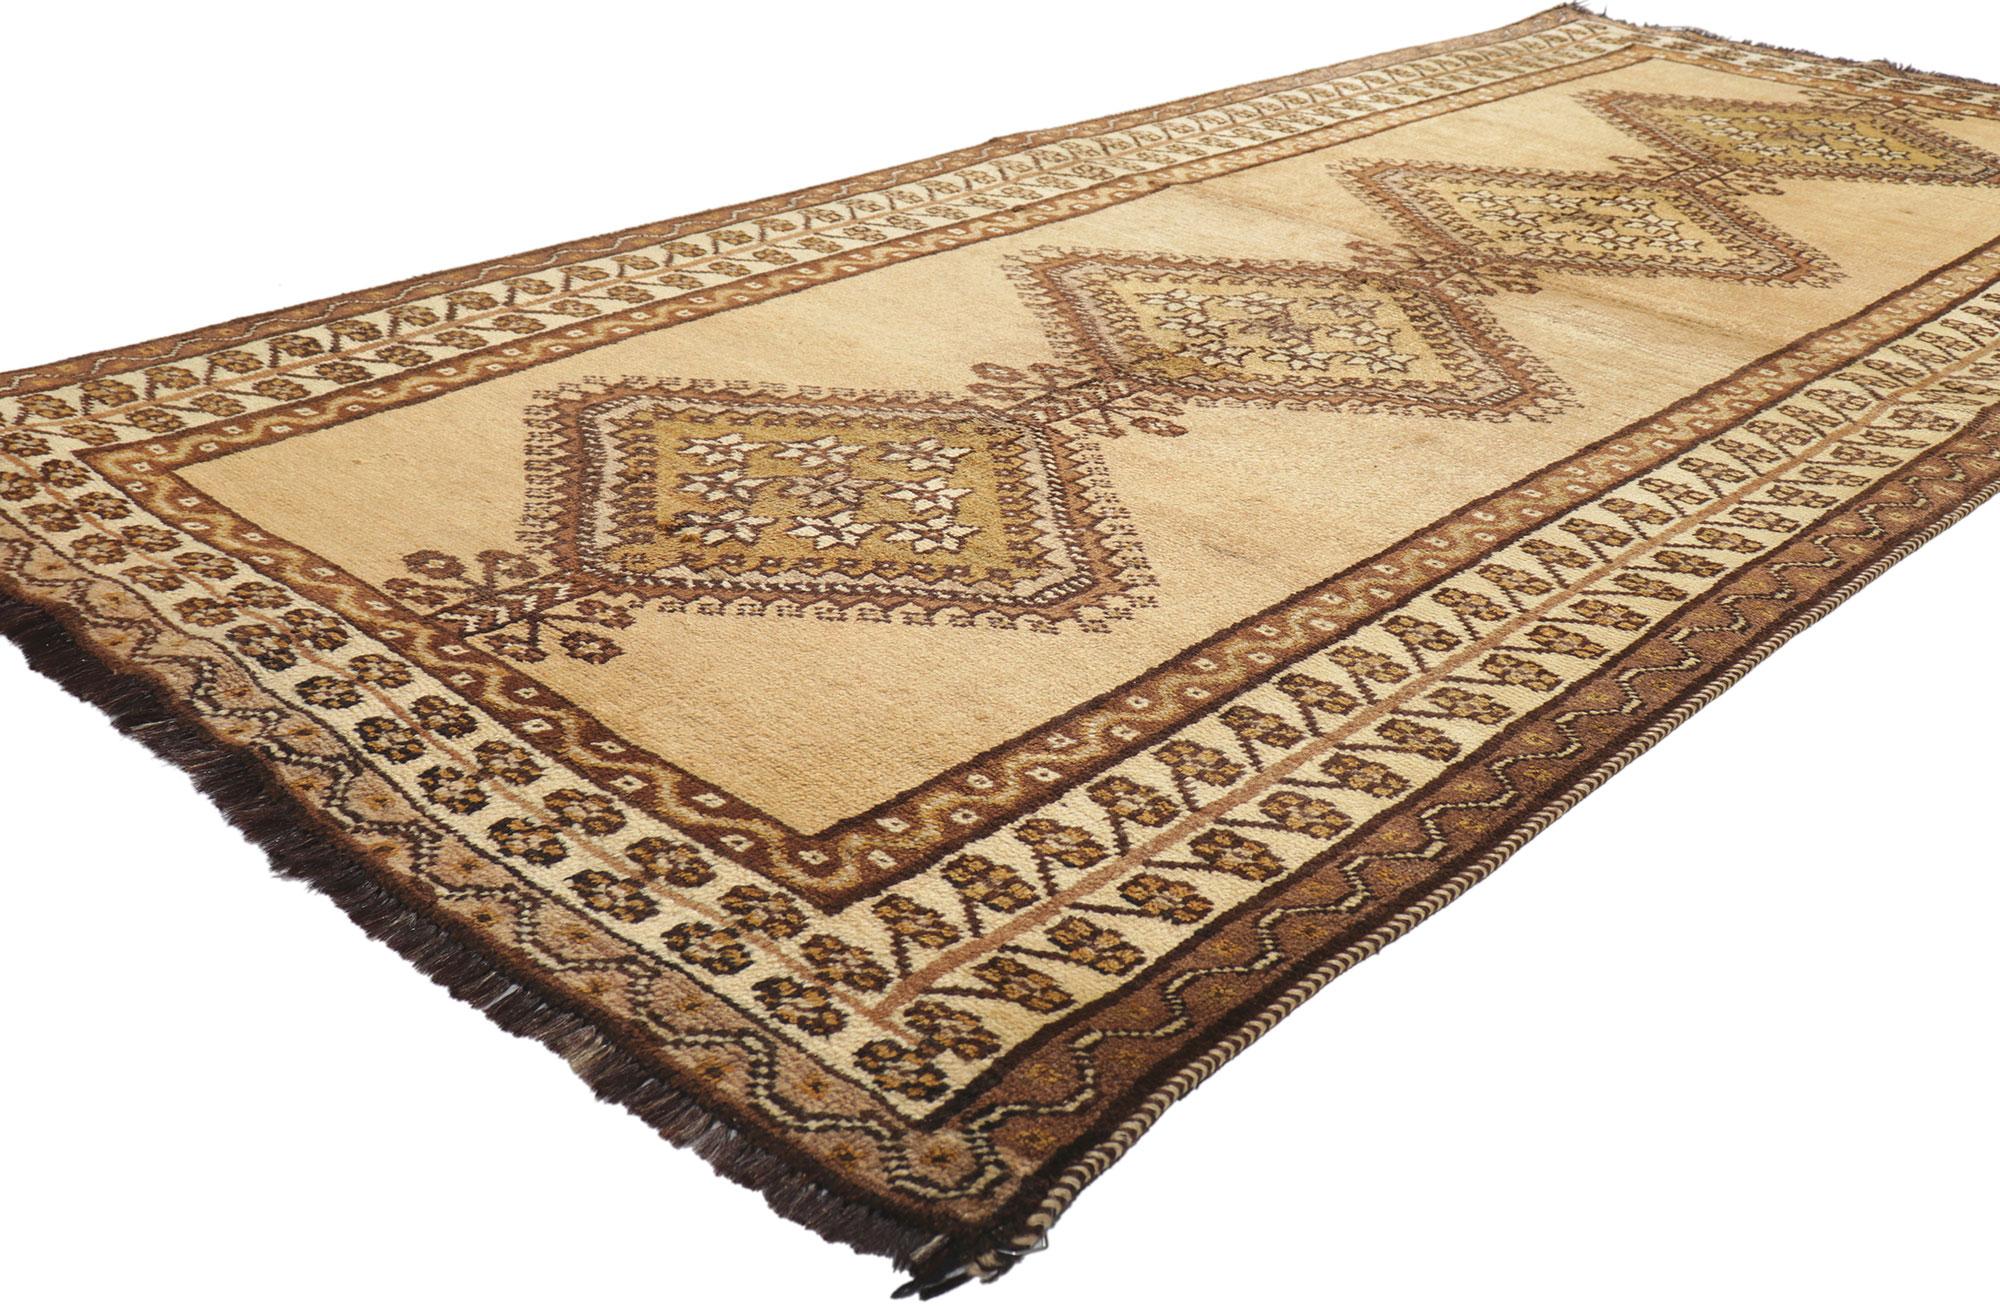 75056 Vintage Persisch Shiraz Stammes-Teppich, 03'10 x 08'06.
Dieser handgeknüpfte persische Shiraz-Teppich aus Wolle strahlt nomadischen Charme aus und besticht durch seine unglaubliche Detailtreue und Textur. Die verschlungenen geometrischen